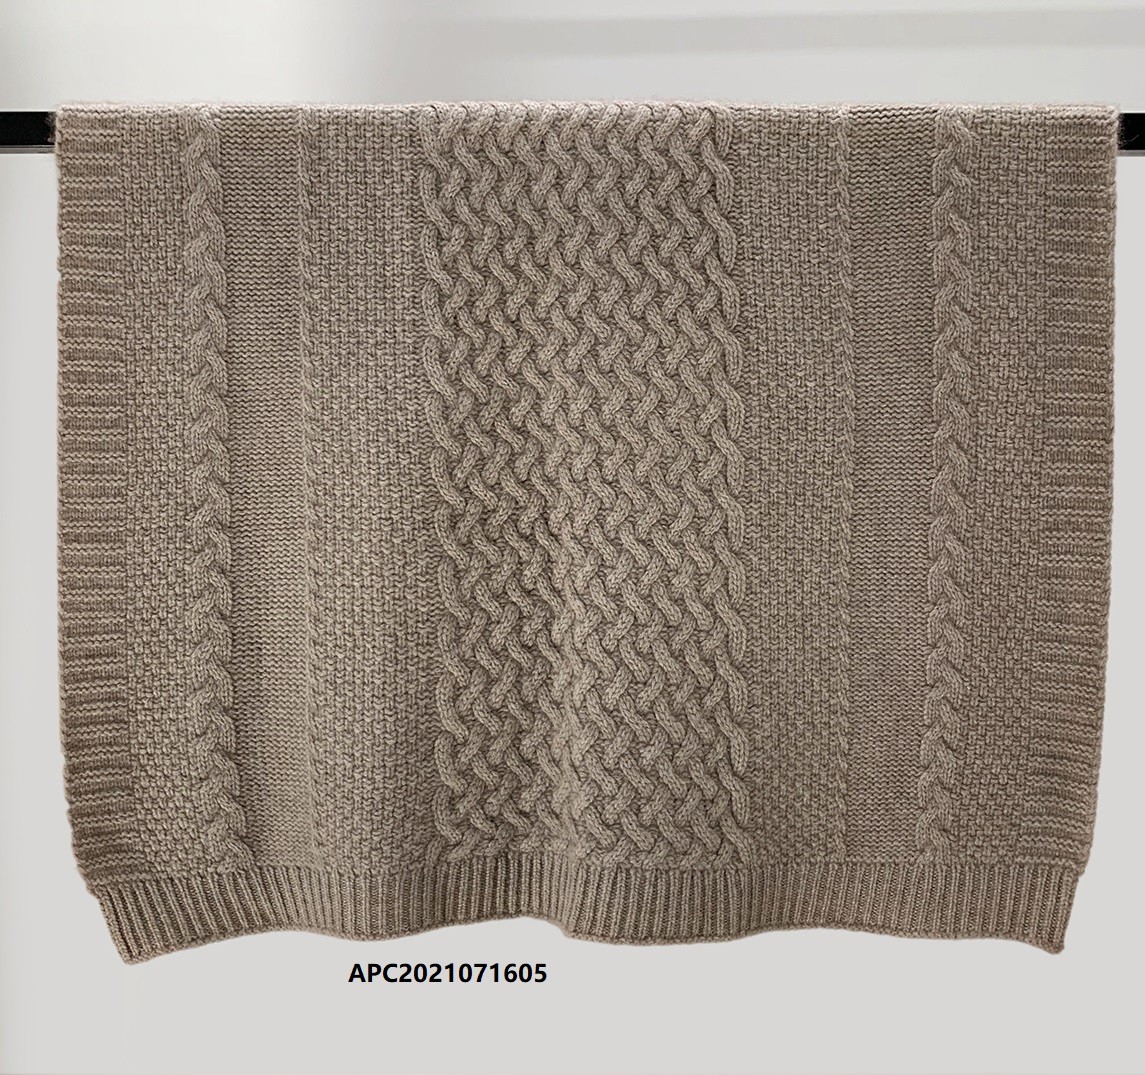 Baby's Cashmere Blanket-APC2021071601 